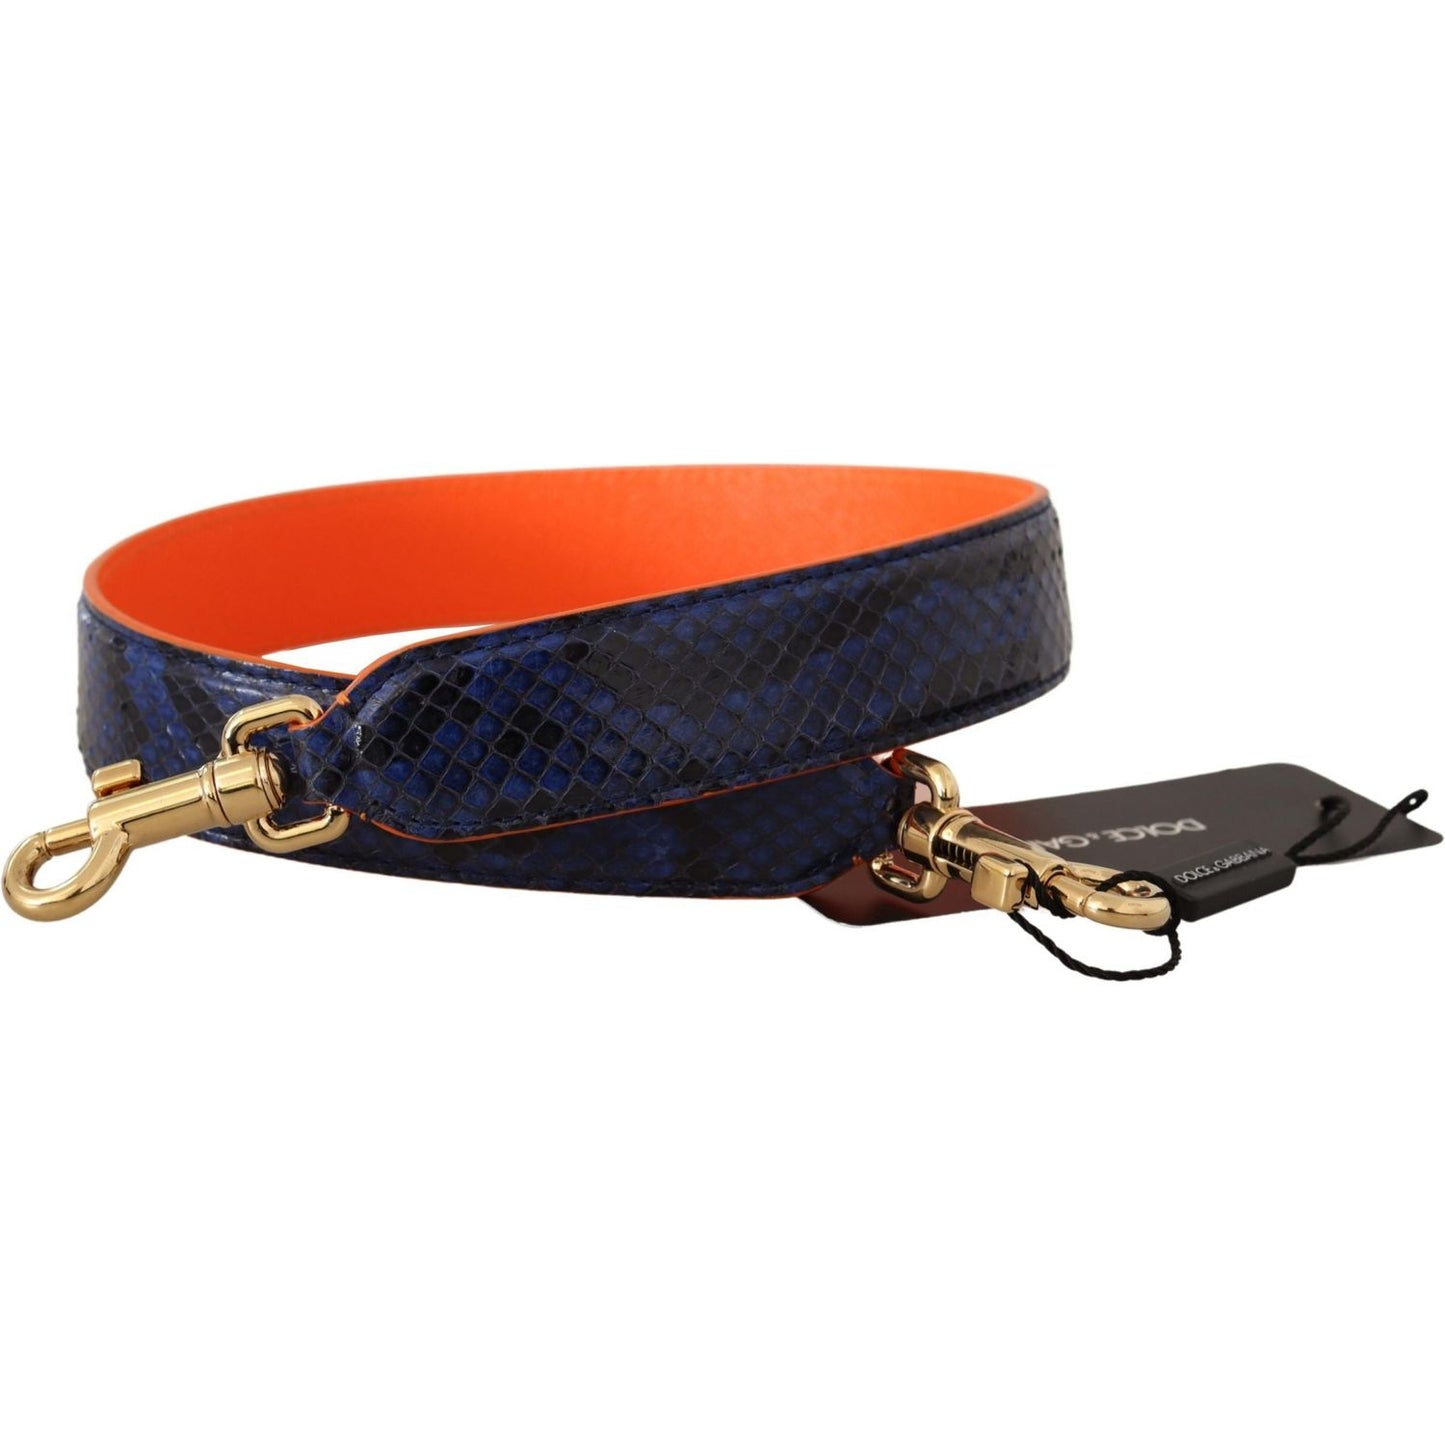 Dolce & Gabbana Exotic Snakeskin Shoulder Strap in Purple Hue blue-orange-python-leather-accessory-shoulder-strap